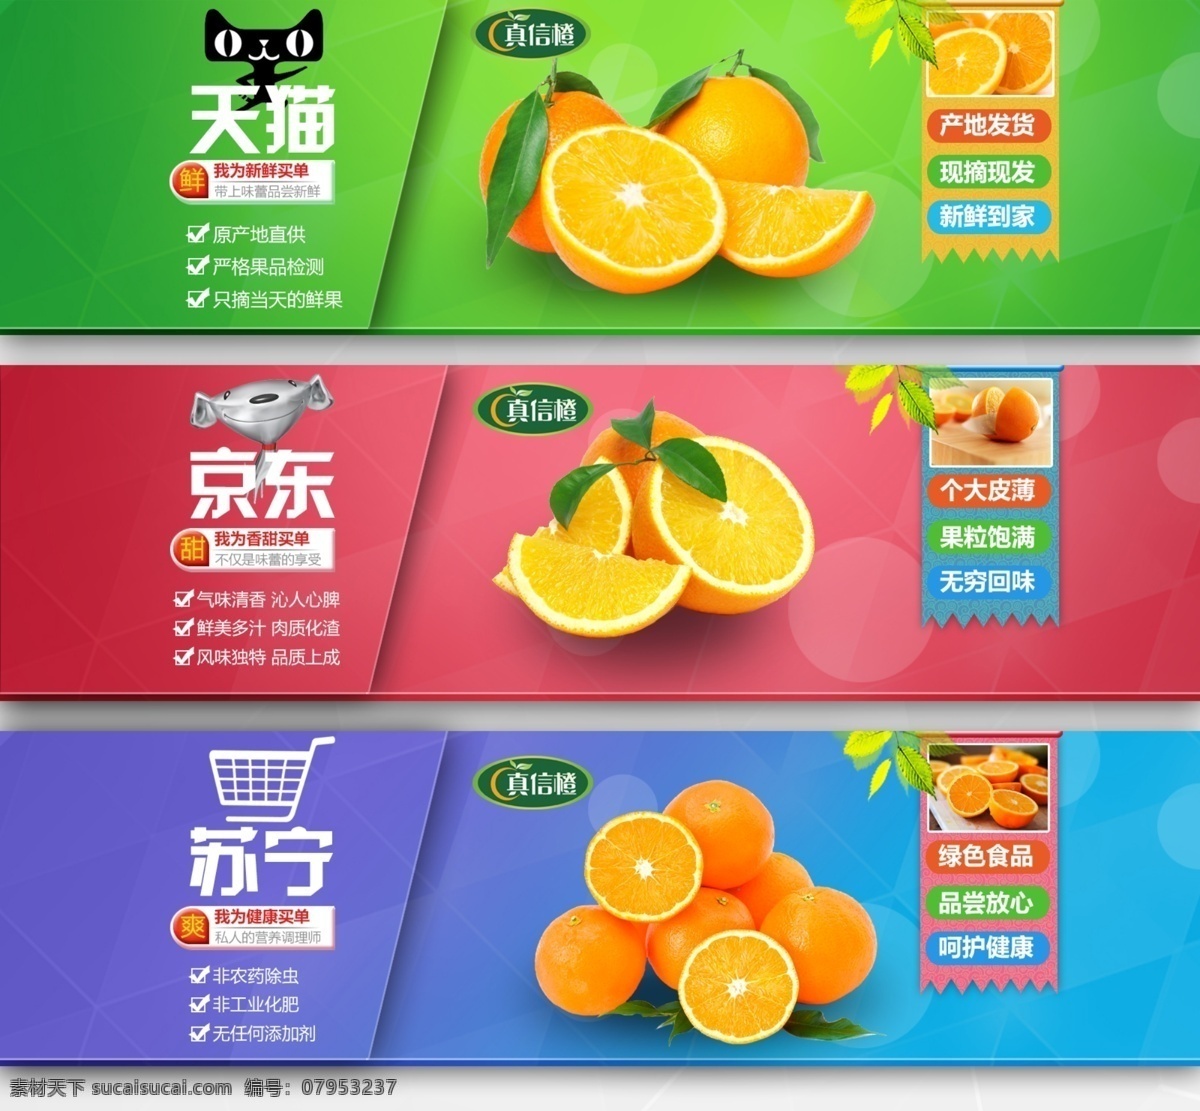 电商 水果 广告宣传 海报 橙子 京东 苏宁 天猫 鲜橙 新鲜 原创设计 其他原创设计